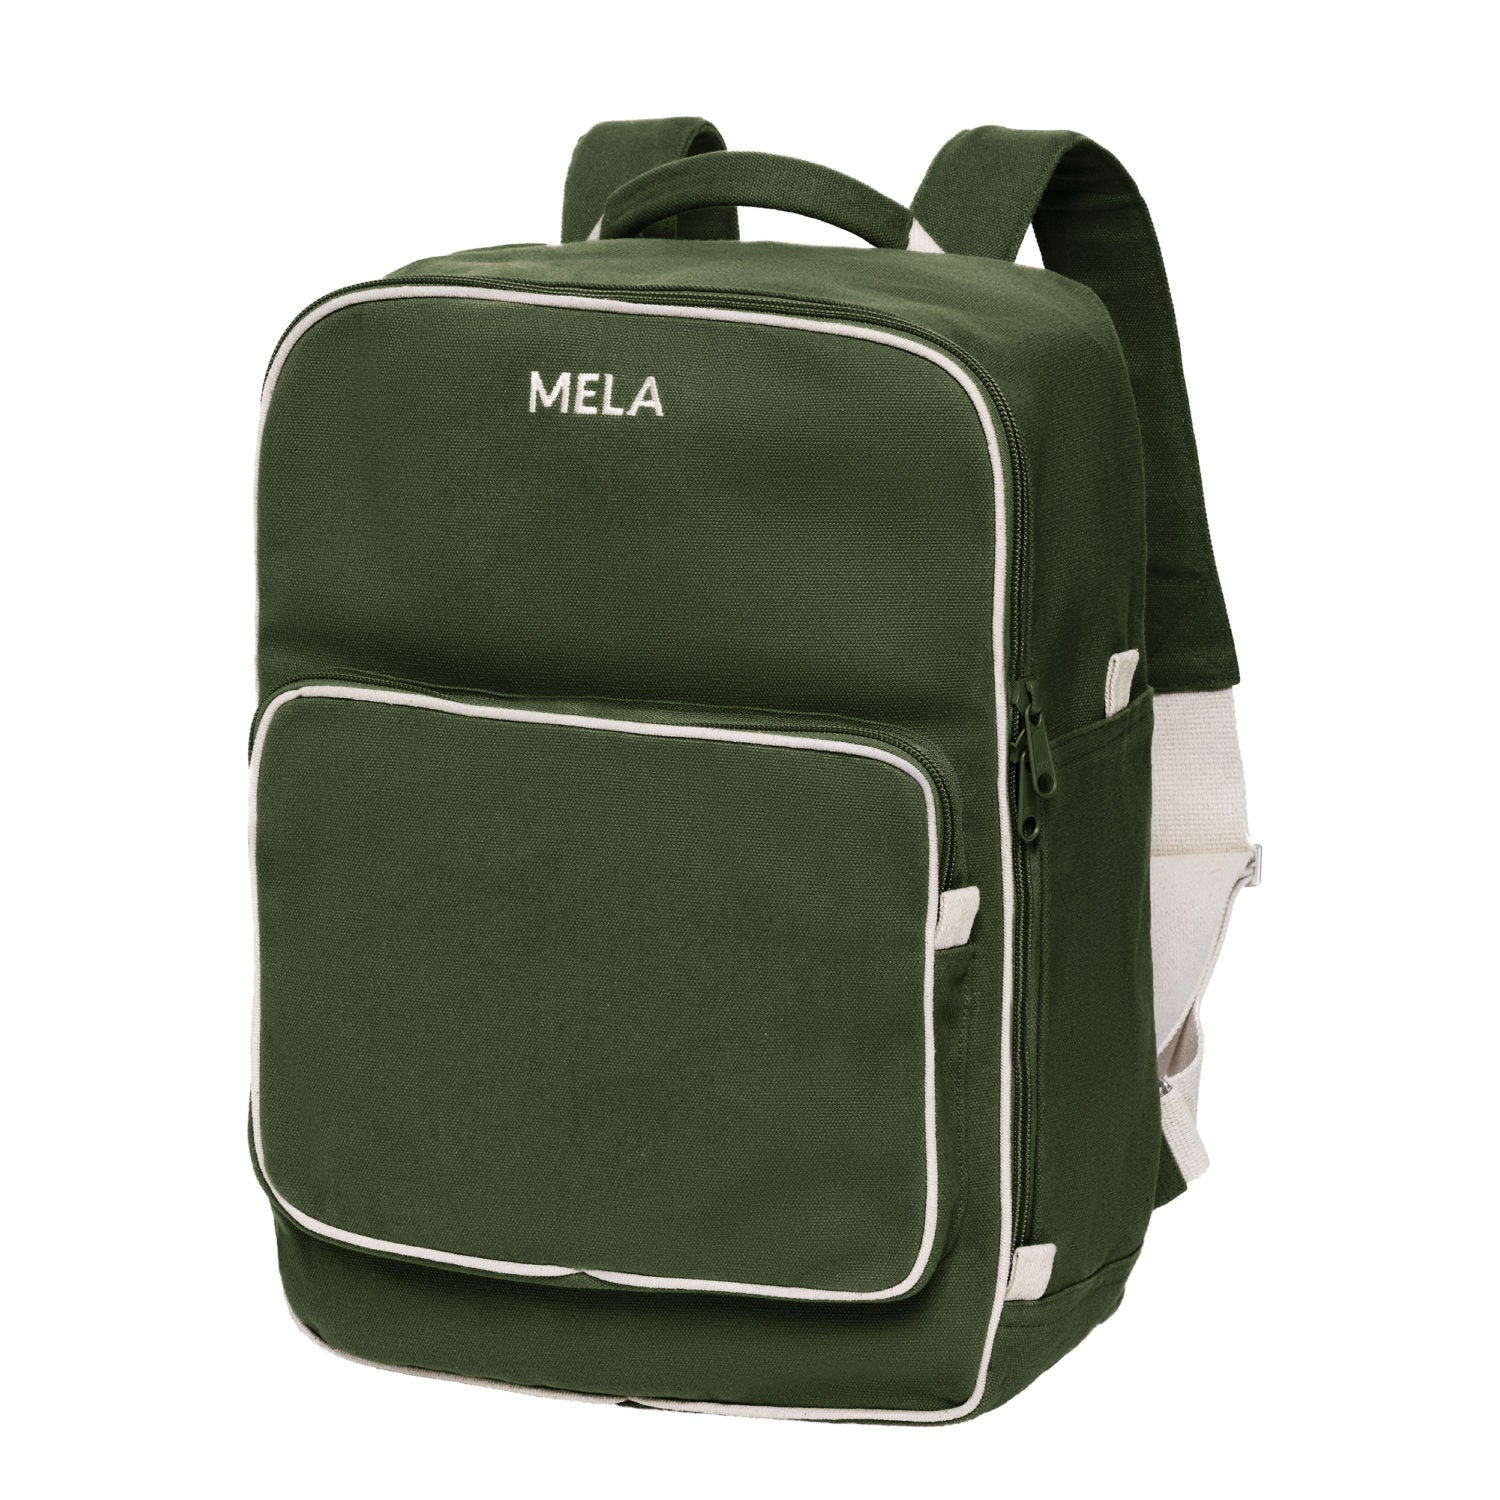 Melawear - MELA II hátizsák - Olíva zöld